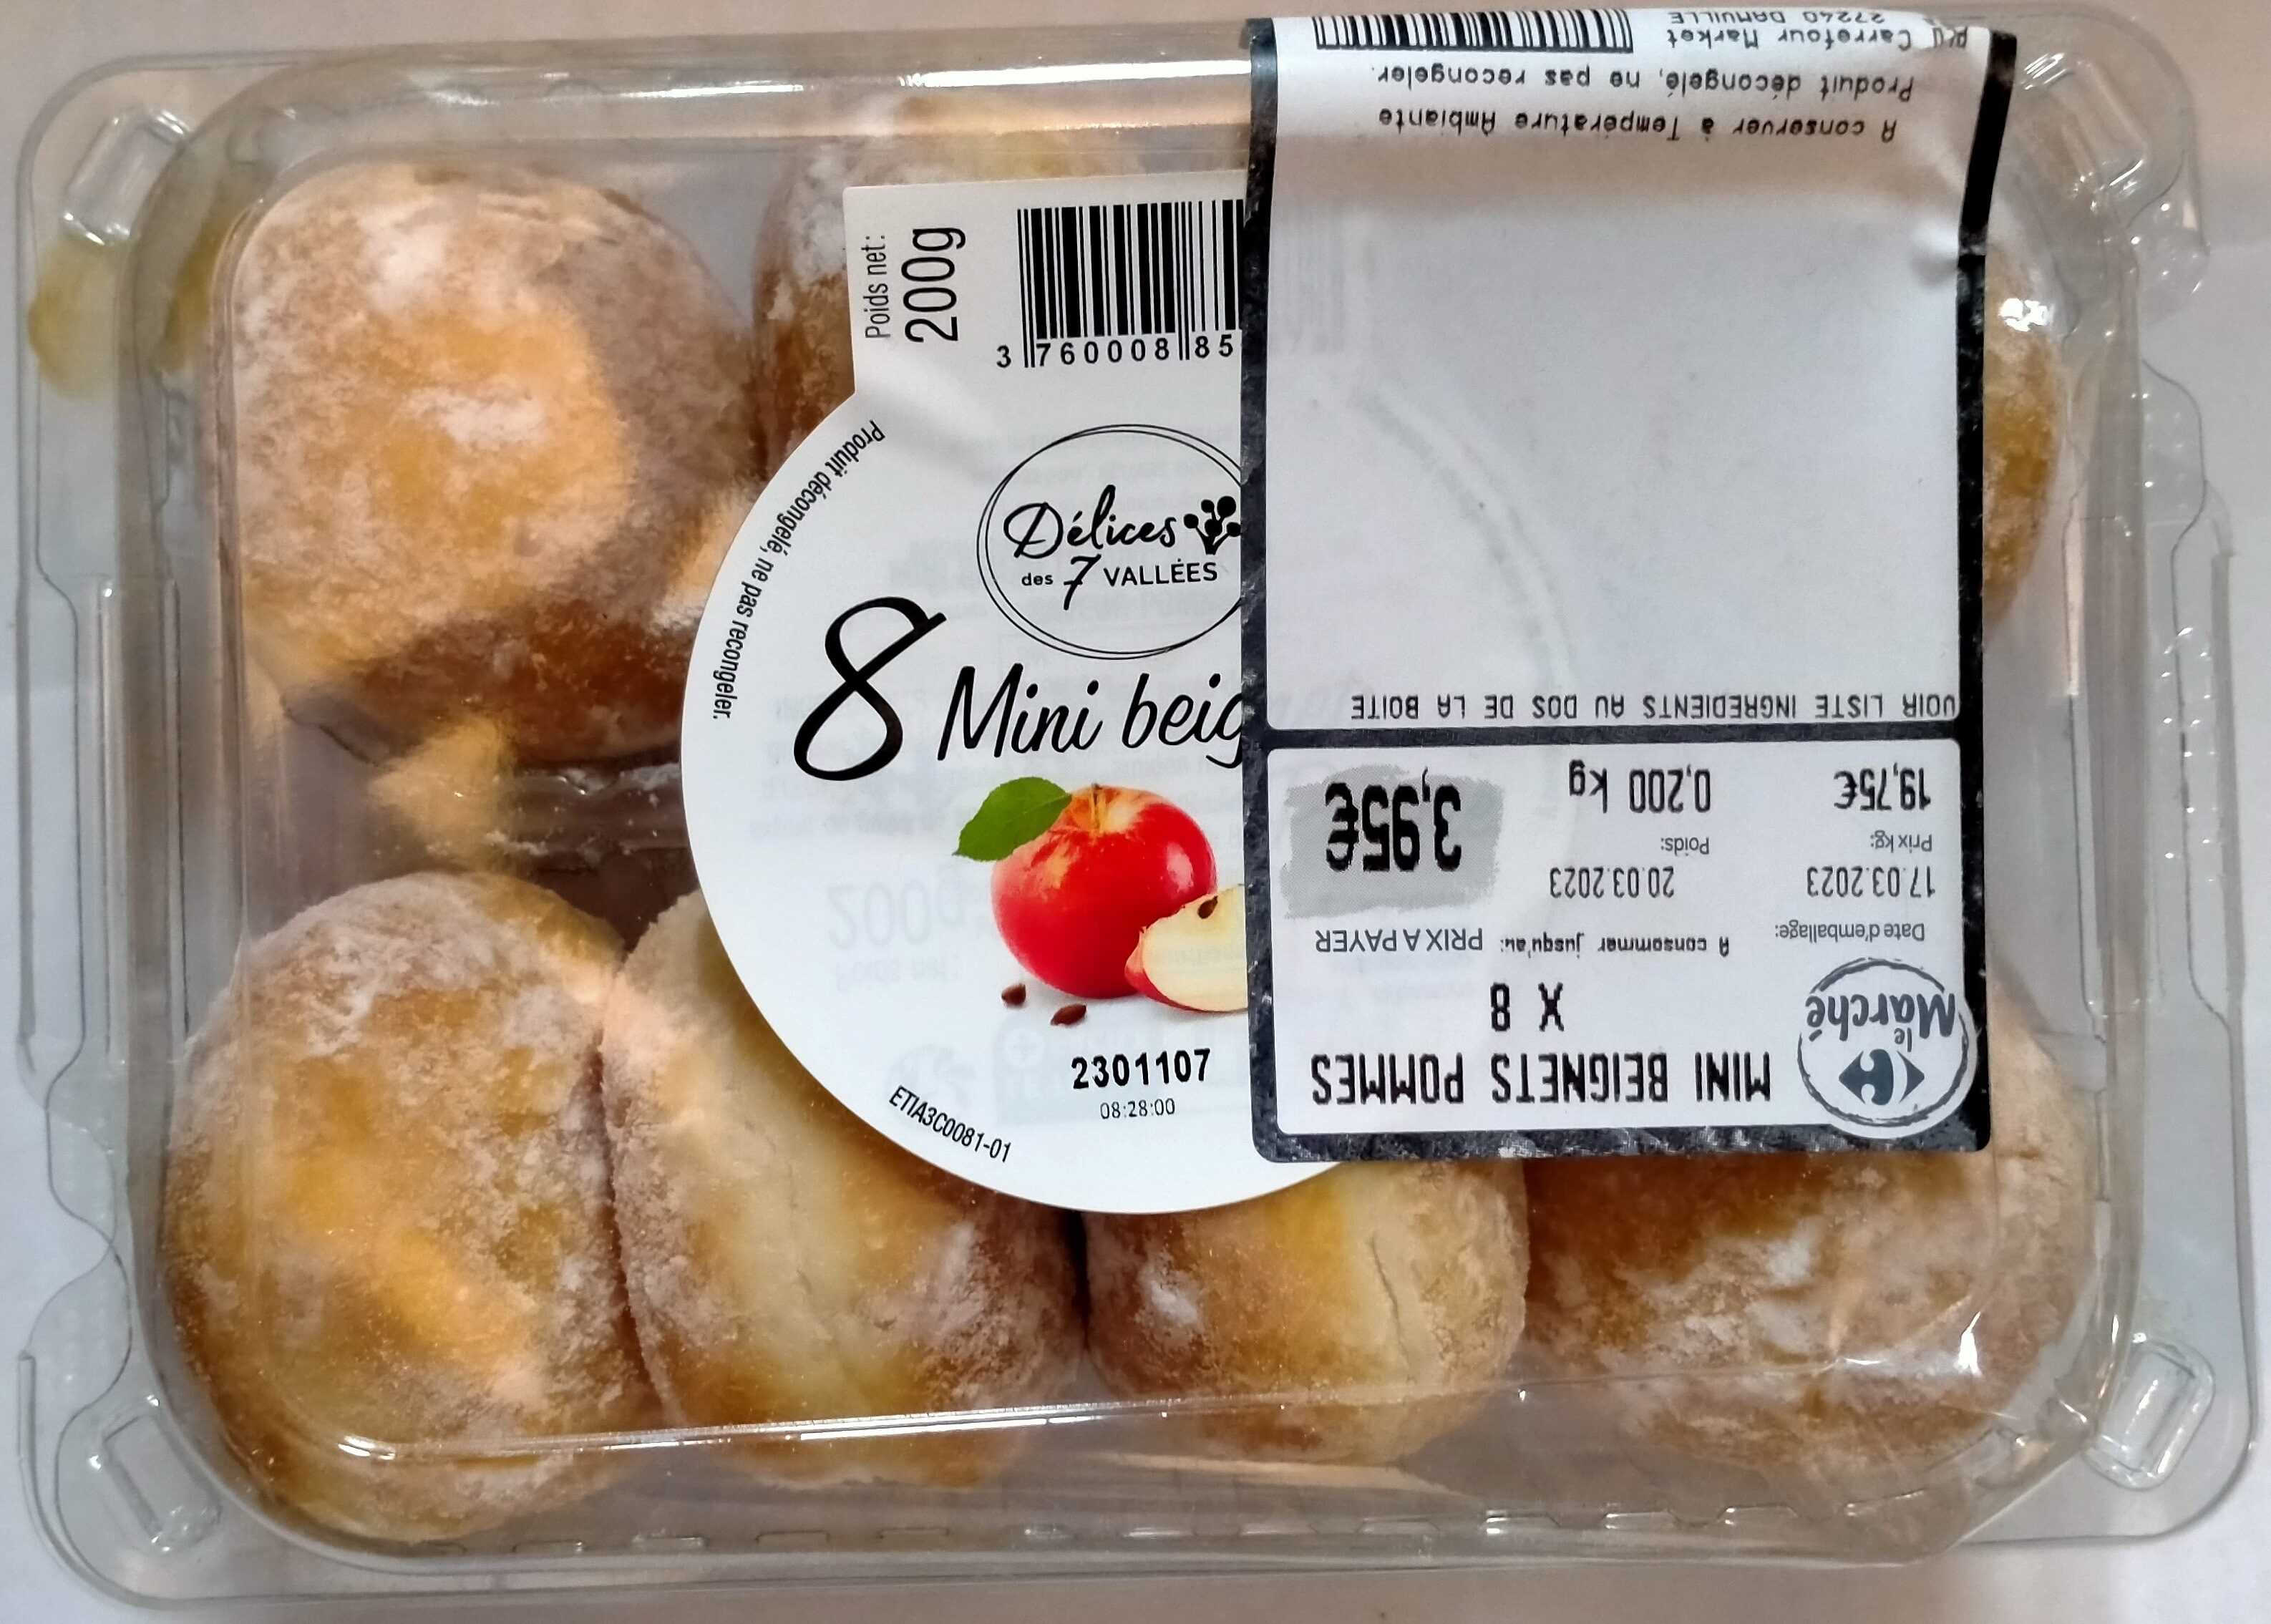 8 mini beignets fourrés aux pommes - Product - fr